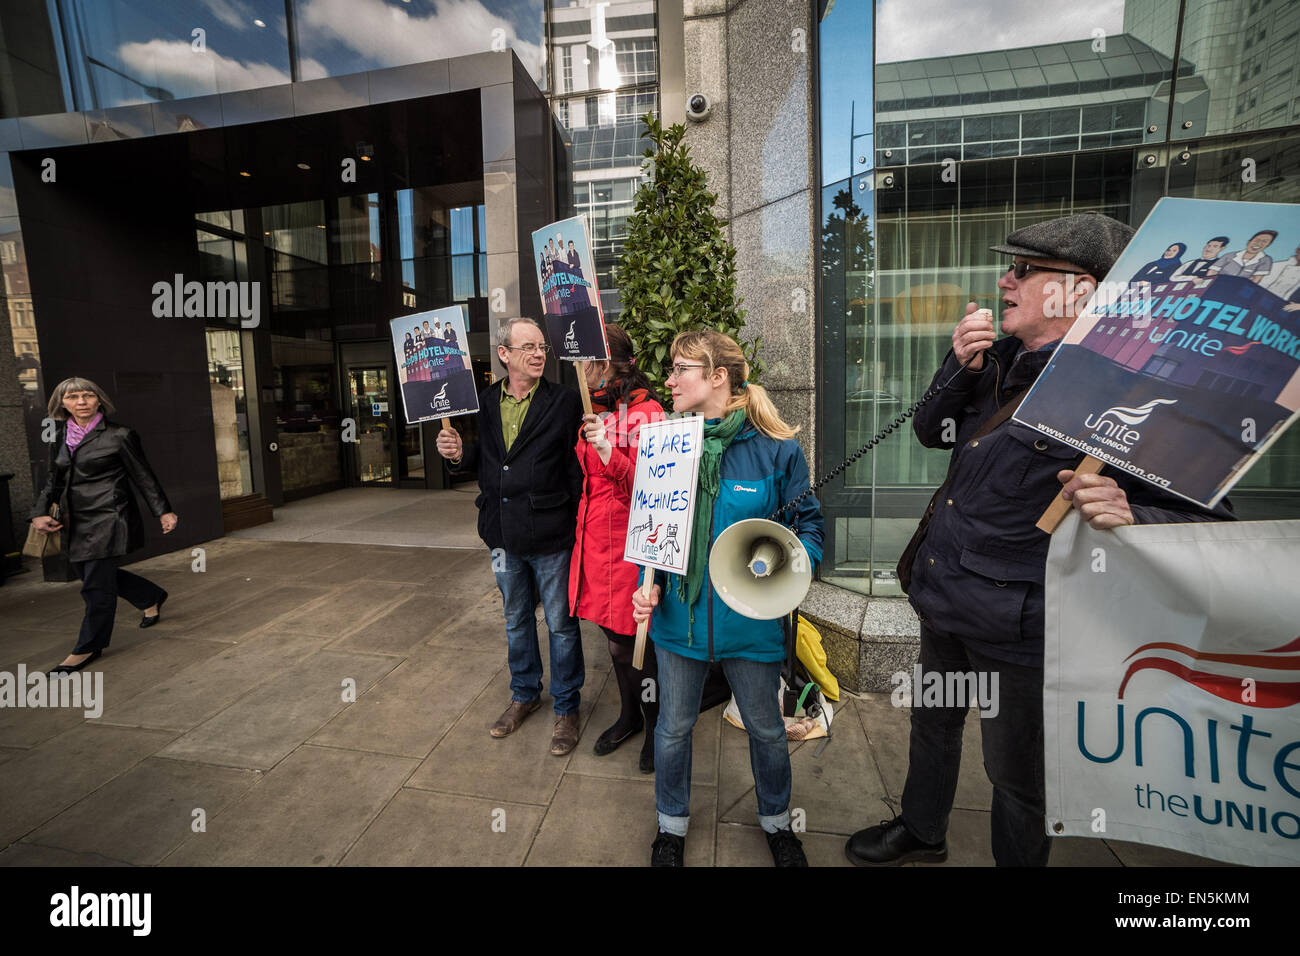 Londres, Royaume-Uni. 28 avril, 2015. Protestation des travailleurs à l'extérieur de l'hôtel Hilton Metropole Hotel Crédit : Guy Josse/Alamy Live News Banque D'Images